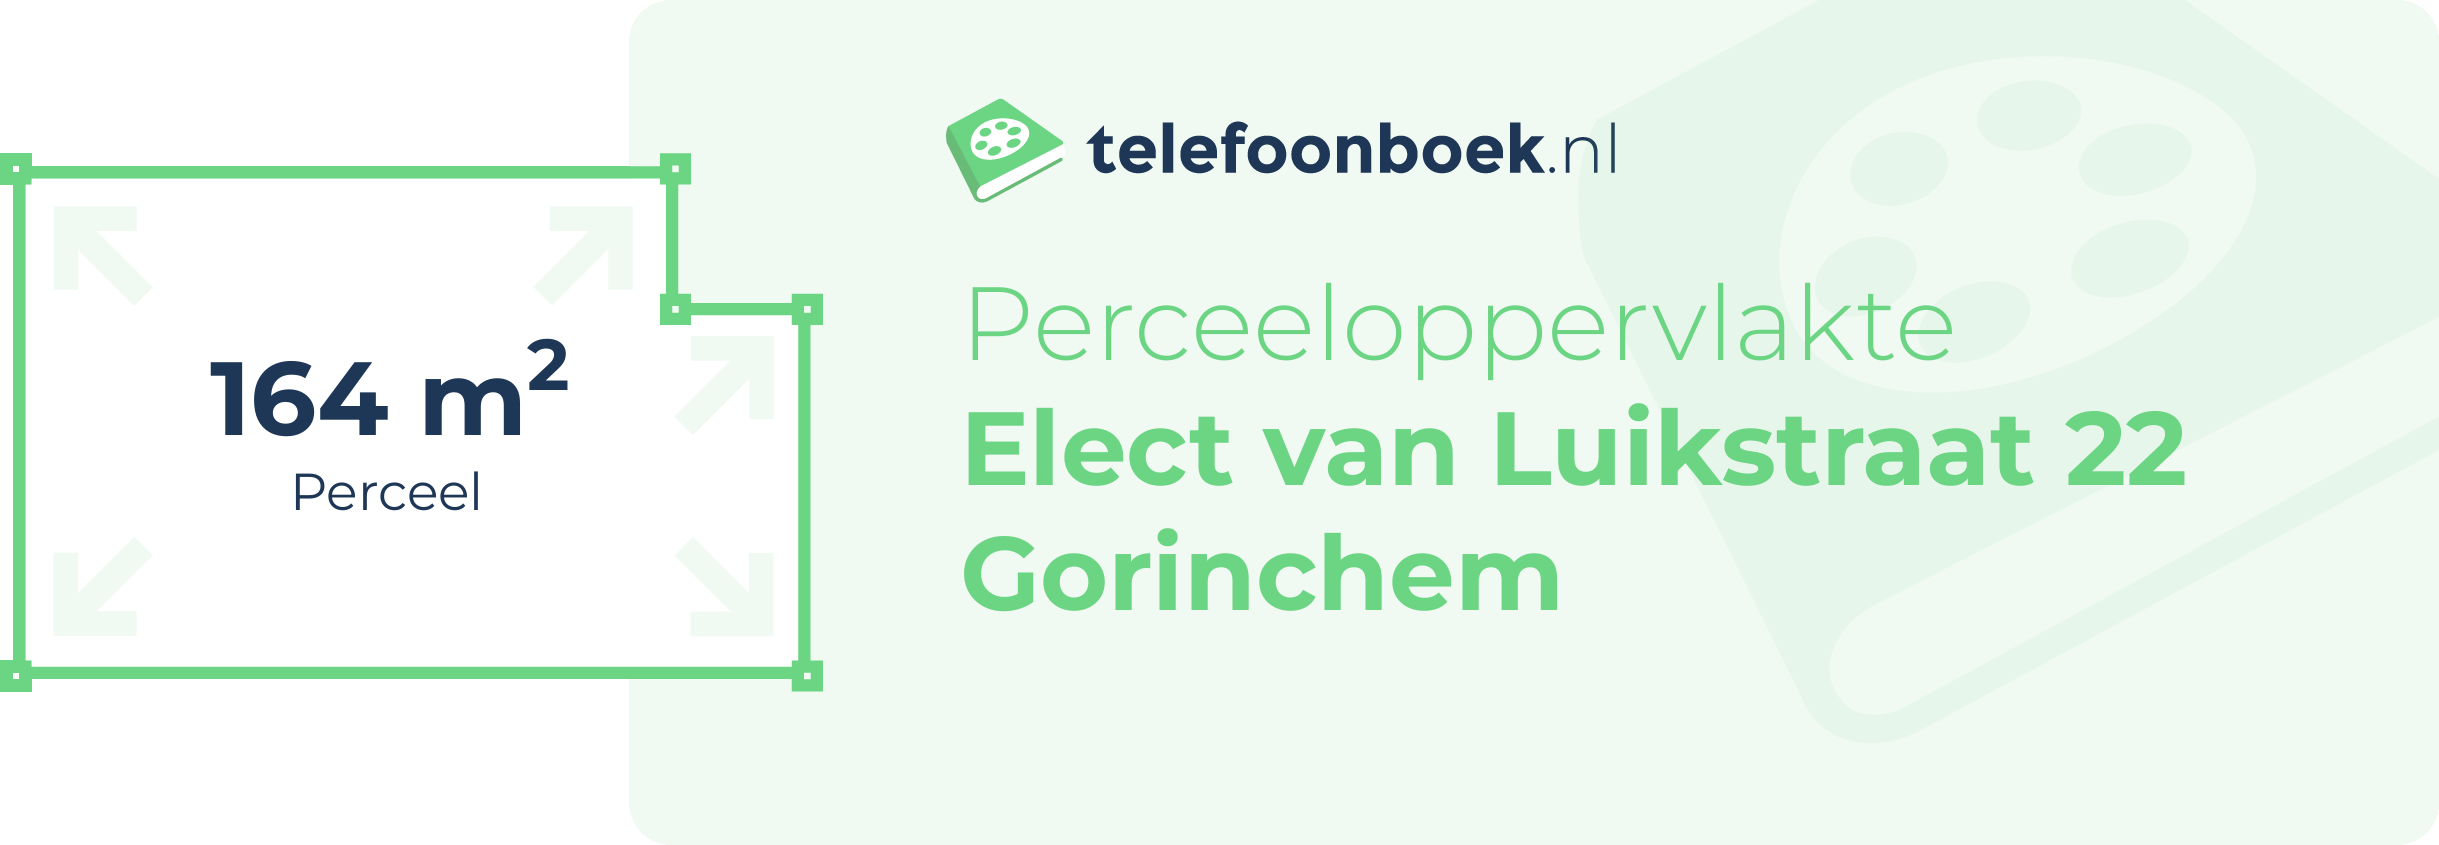 Perceeloppervlakte Elect Van Luikstraat 22 Gorinchem